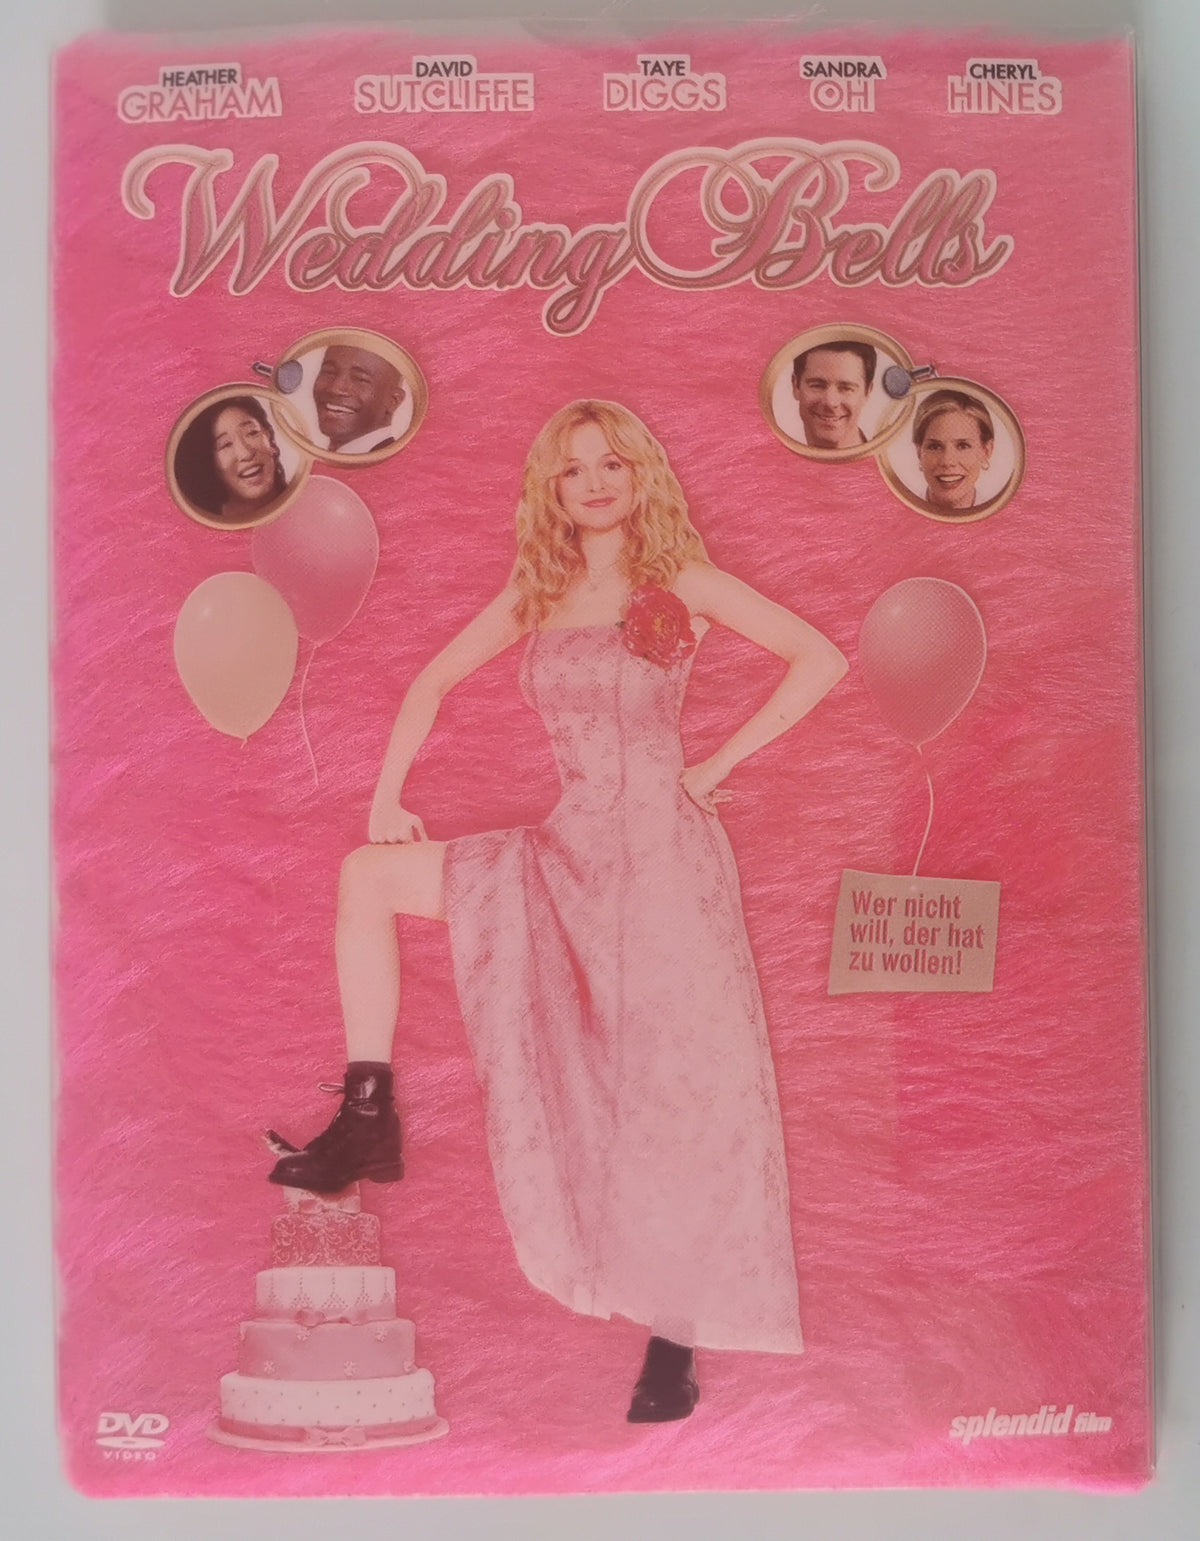 Wedding Bells (DVD) [Gut]